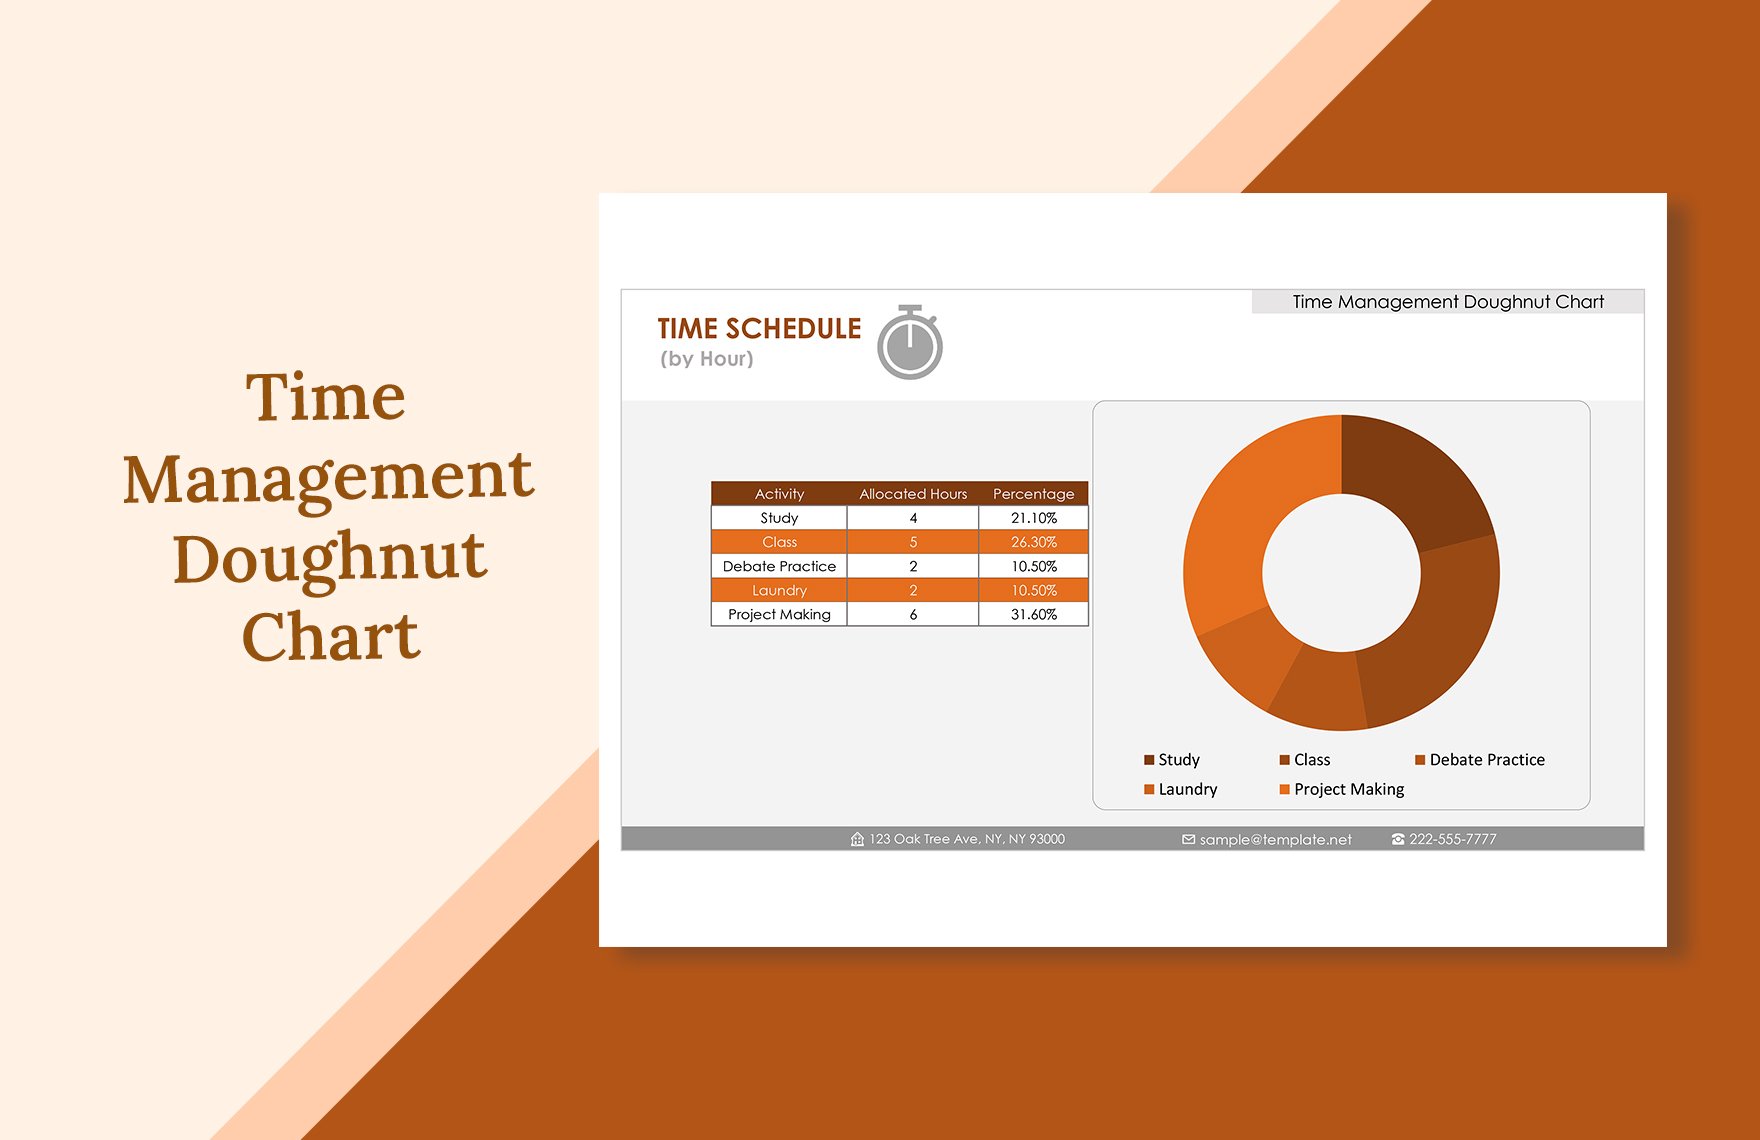 Time Management Doughnut Chart